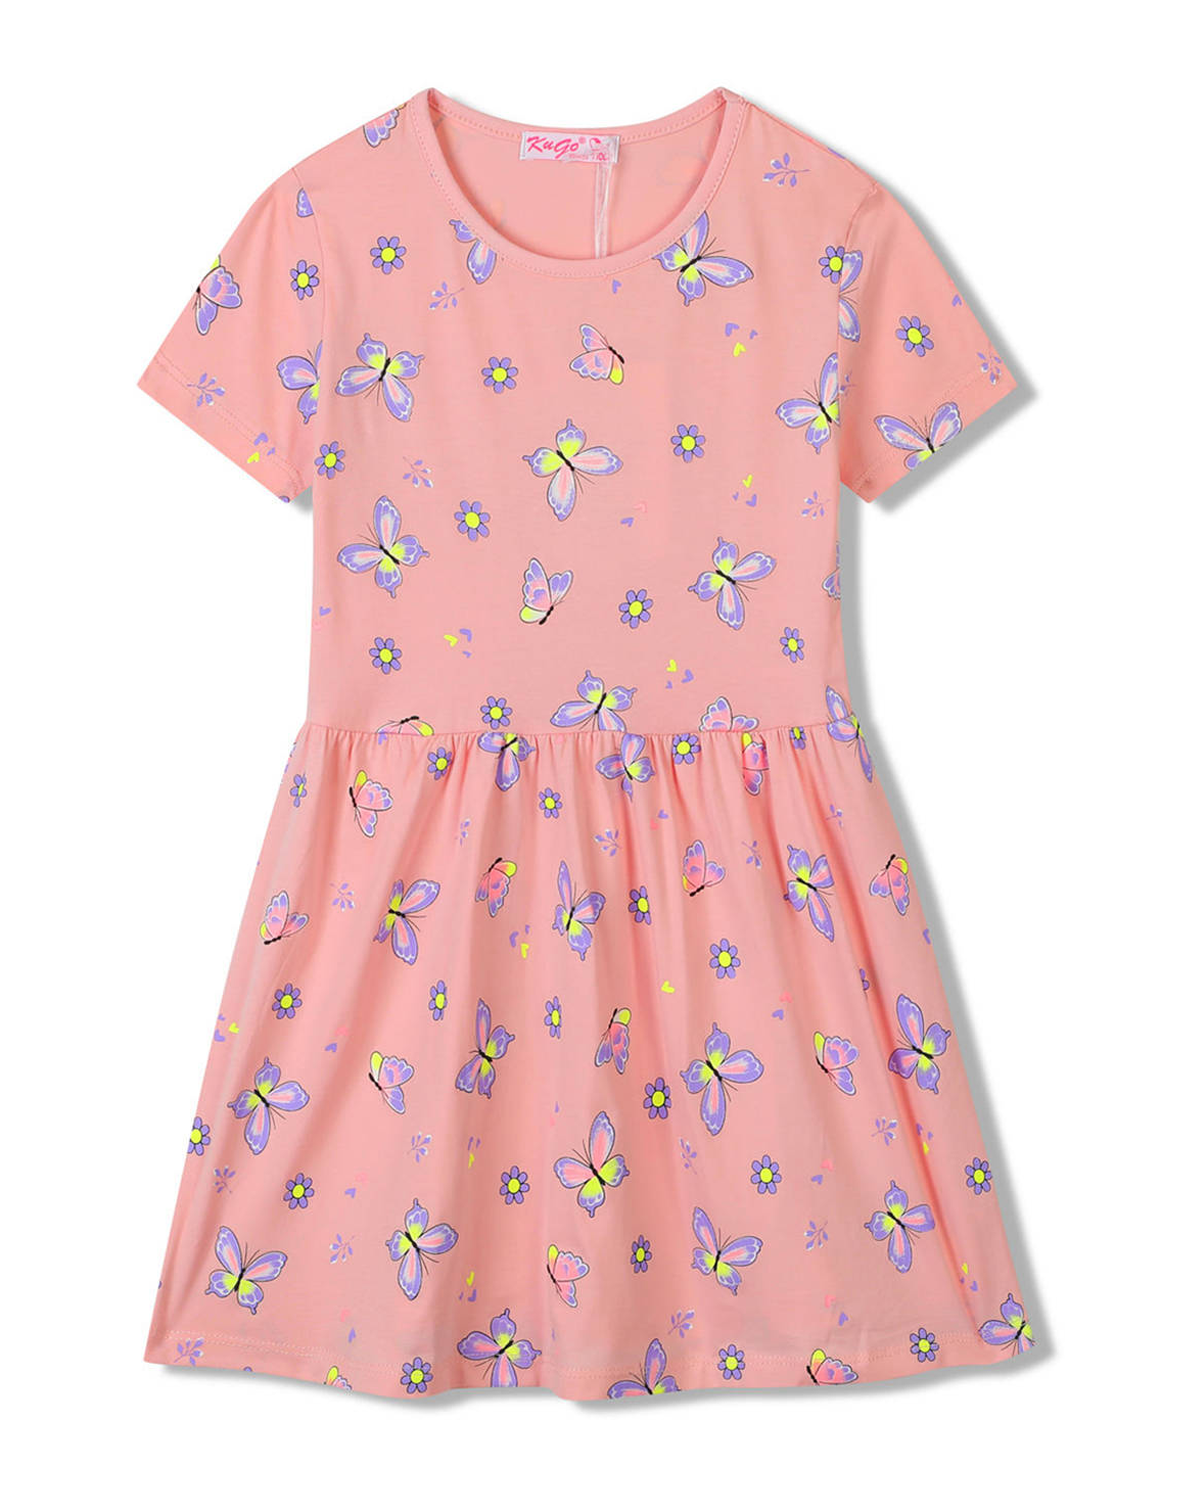 Dívčí šaty - KUGO SH3516, lososová Barva: Lososová, Velikost: 128